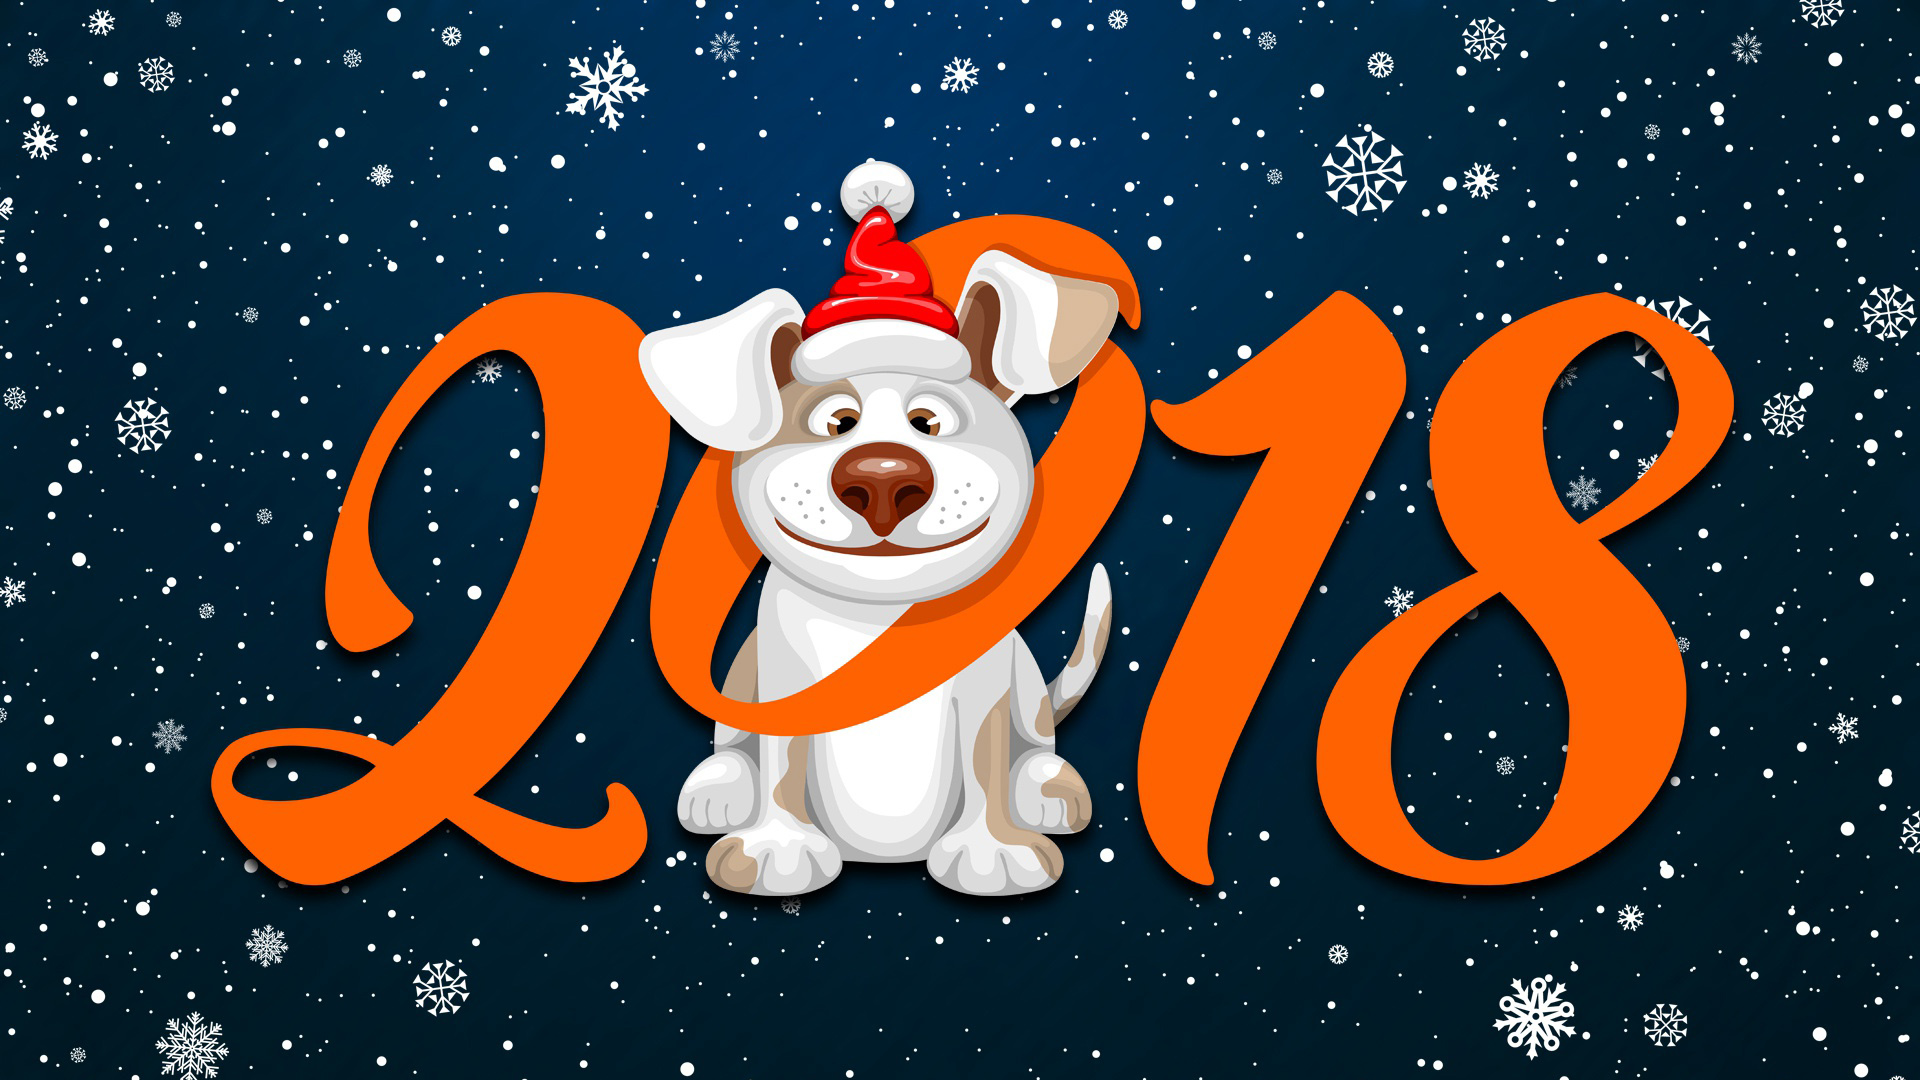 冬天的雪,圣诞节,2018狗年新年桌面壁纸